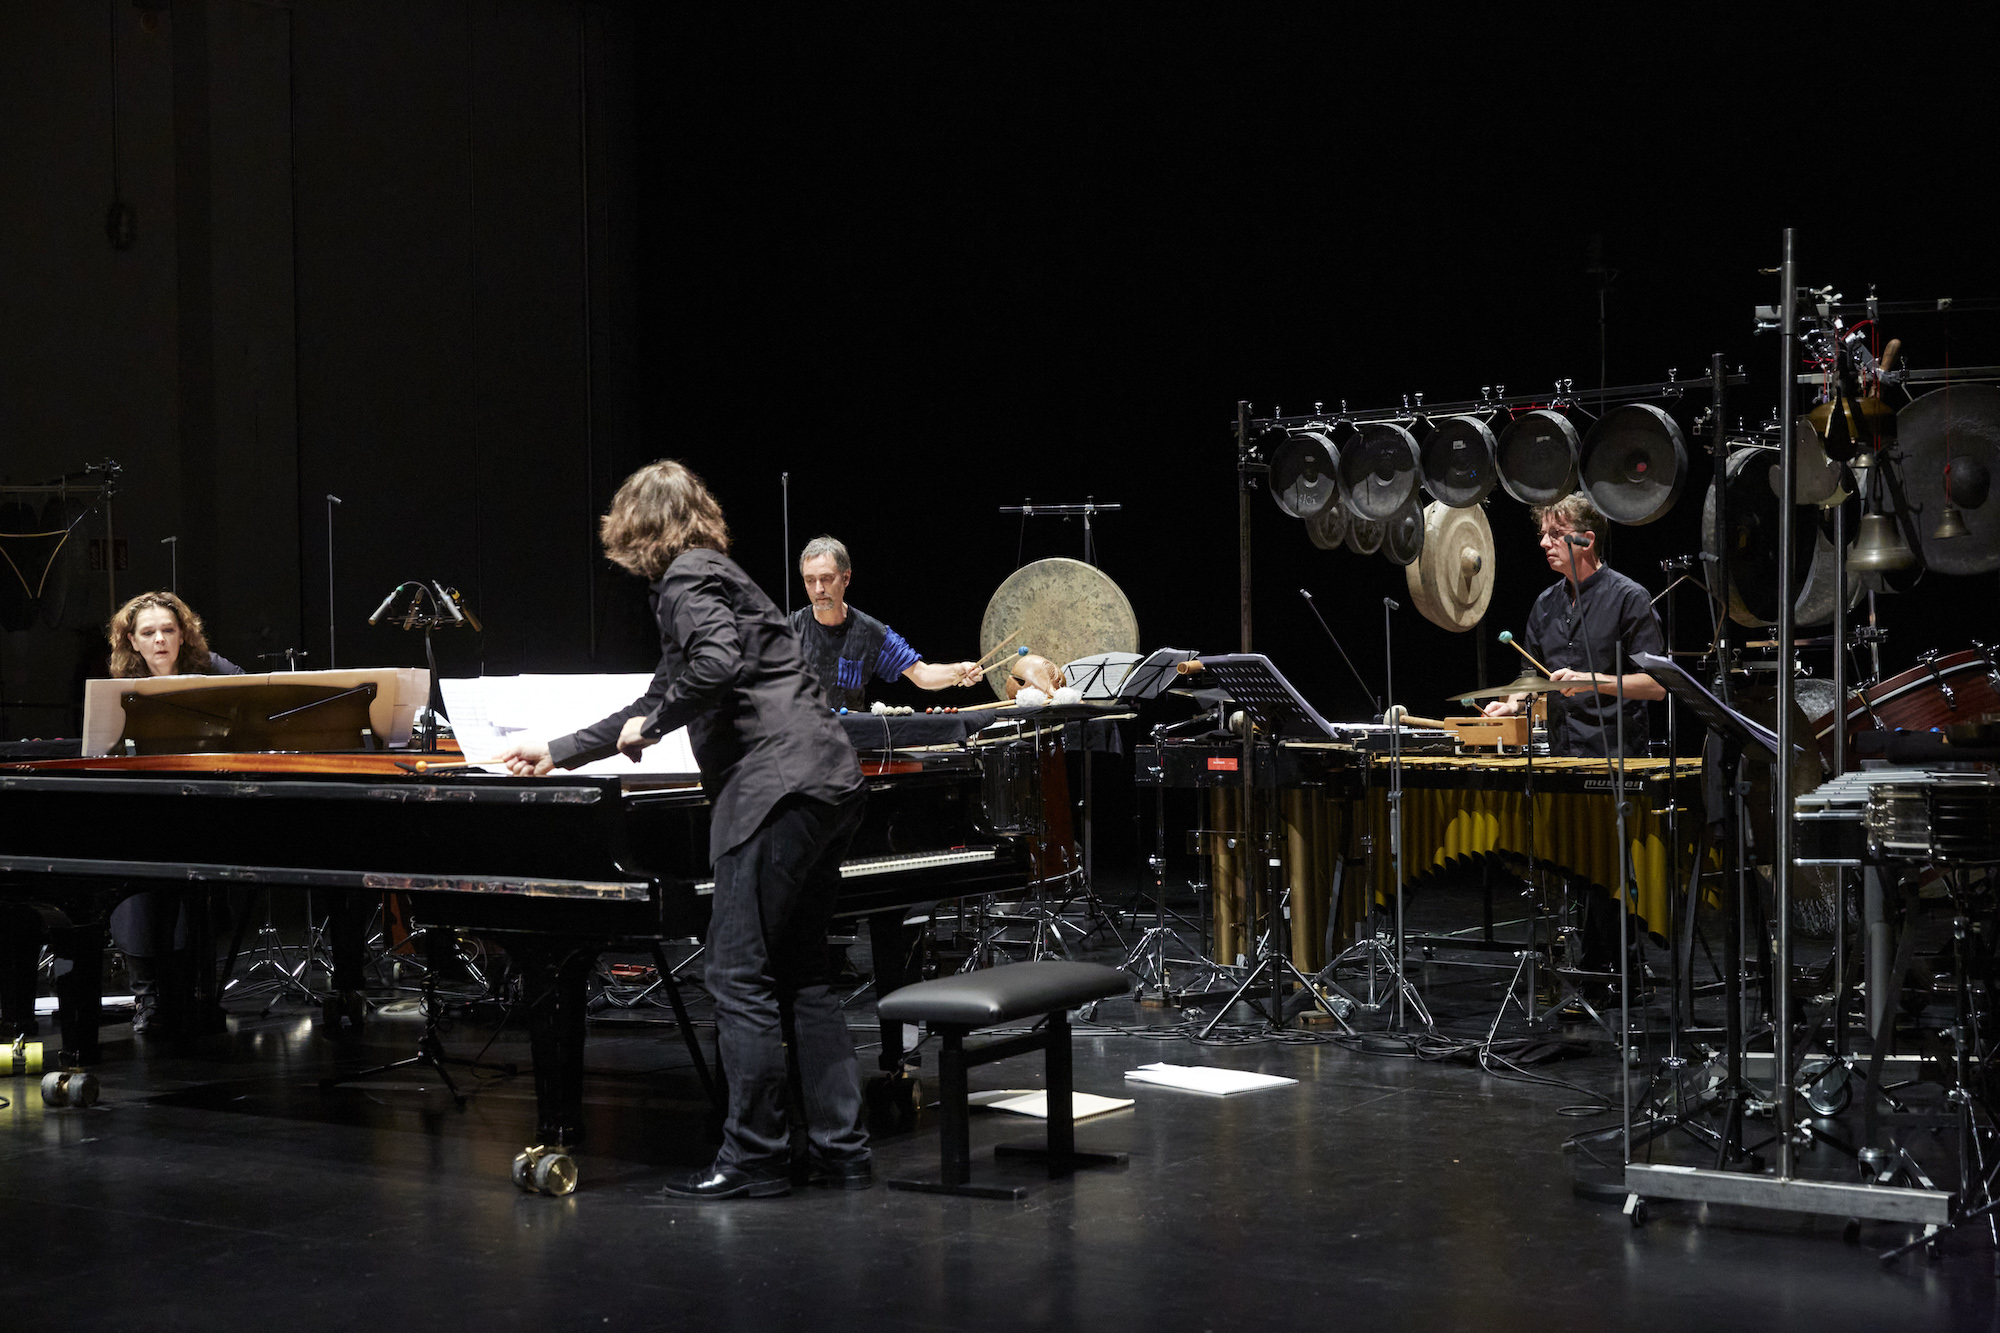 Diverse Instrumente (Klavier, Schlaginstrumente, ect.) stehen auf dunkler Bühne. Vier Personen, zwei Männer und zwei Frauen, spielen auf den Instrumenten. Das Bild ist sehr dunkel.